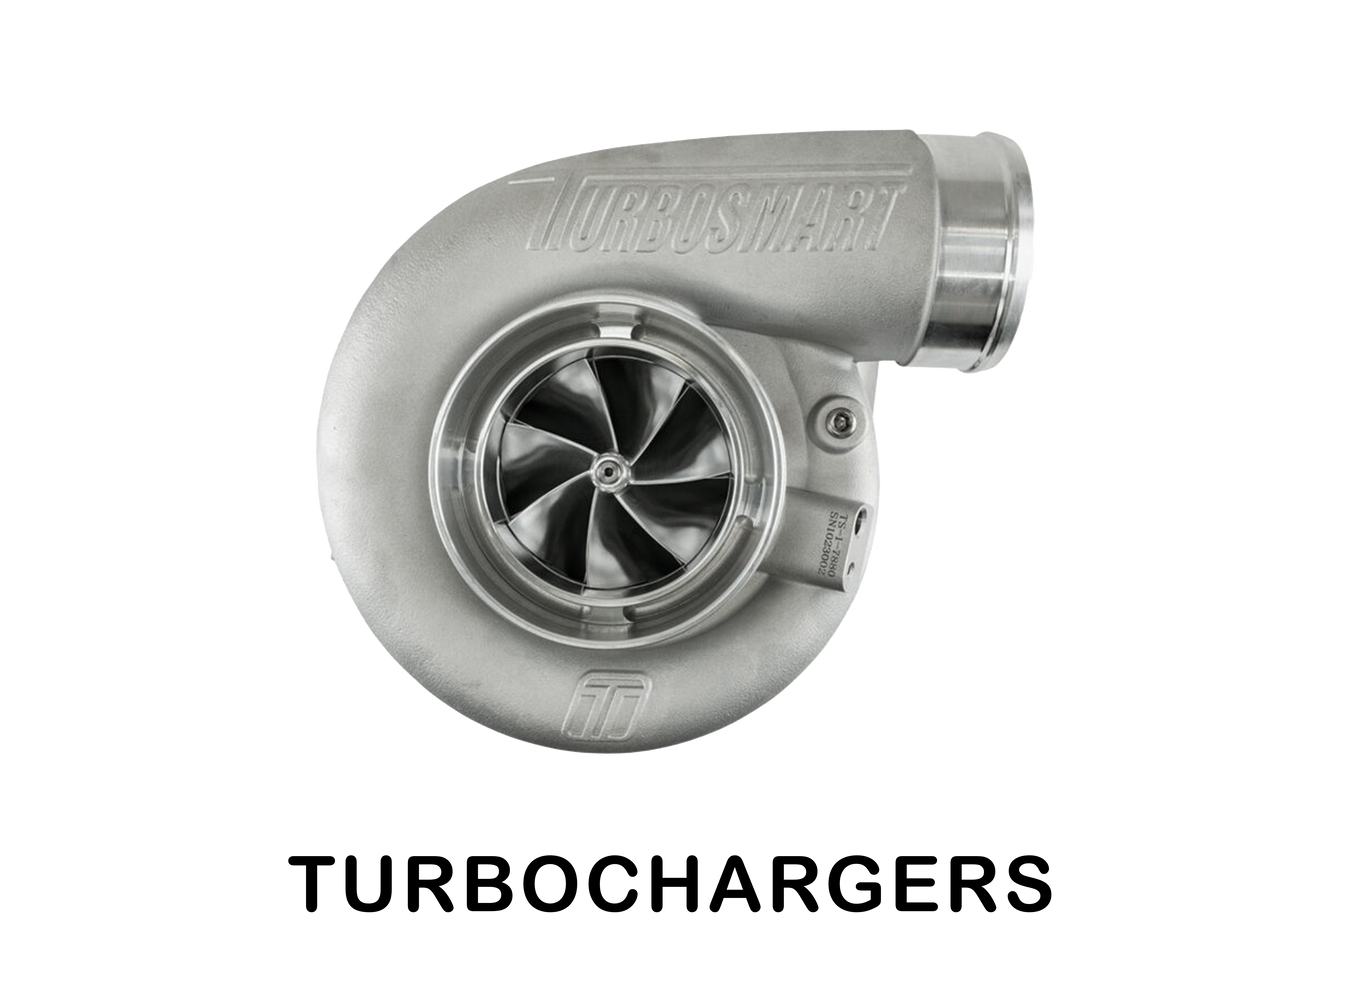 Turbosmart - Turbochargers